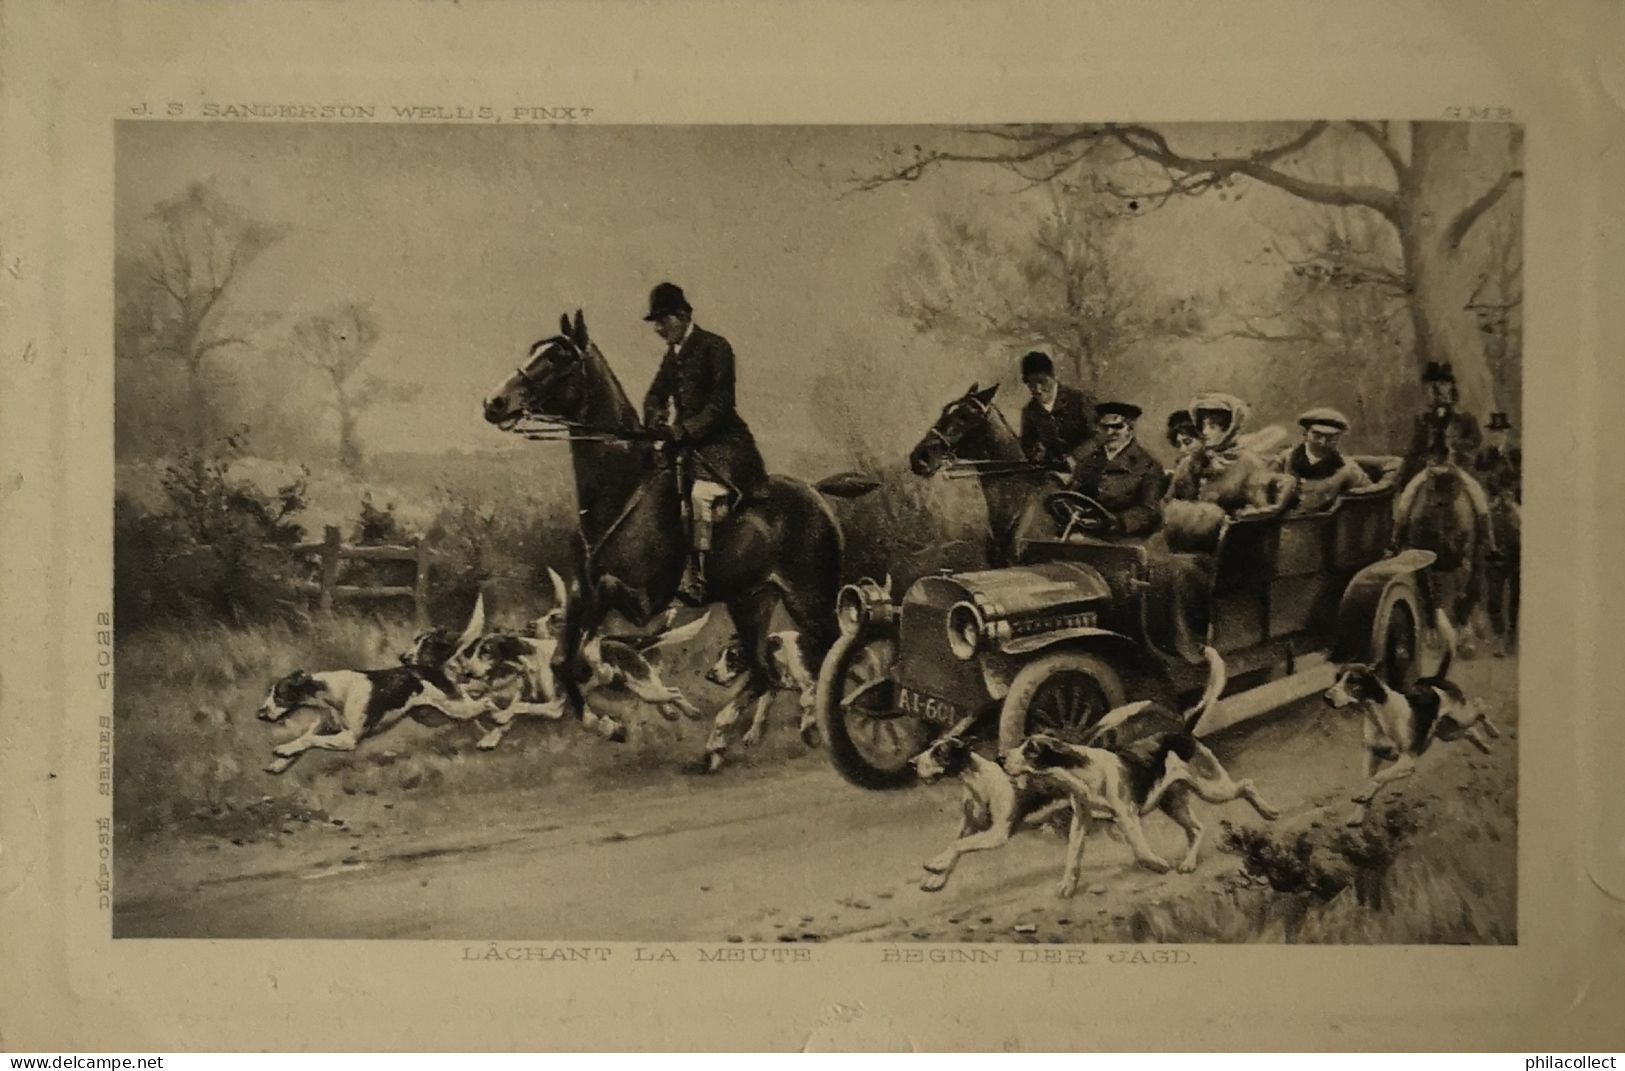 Horses - Hunt - Automobile // Pinx. J. S. Sanderson Wells Lachant La Meute 19?? - Reitsport